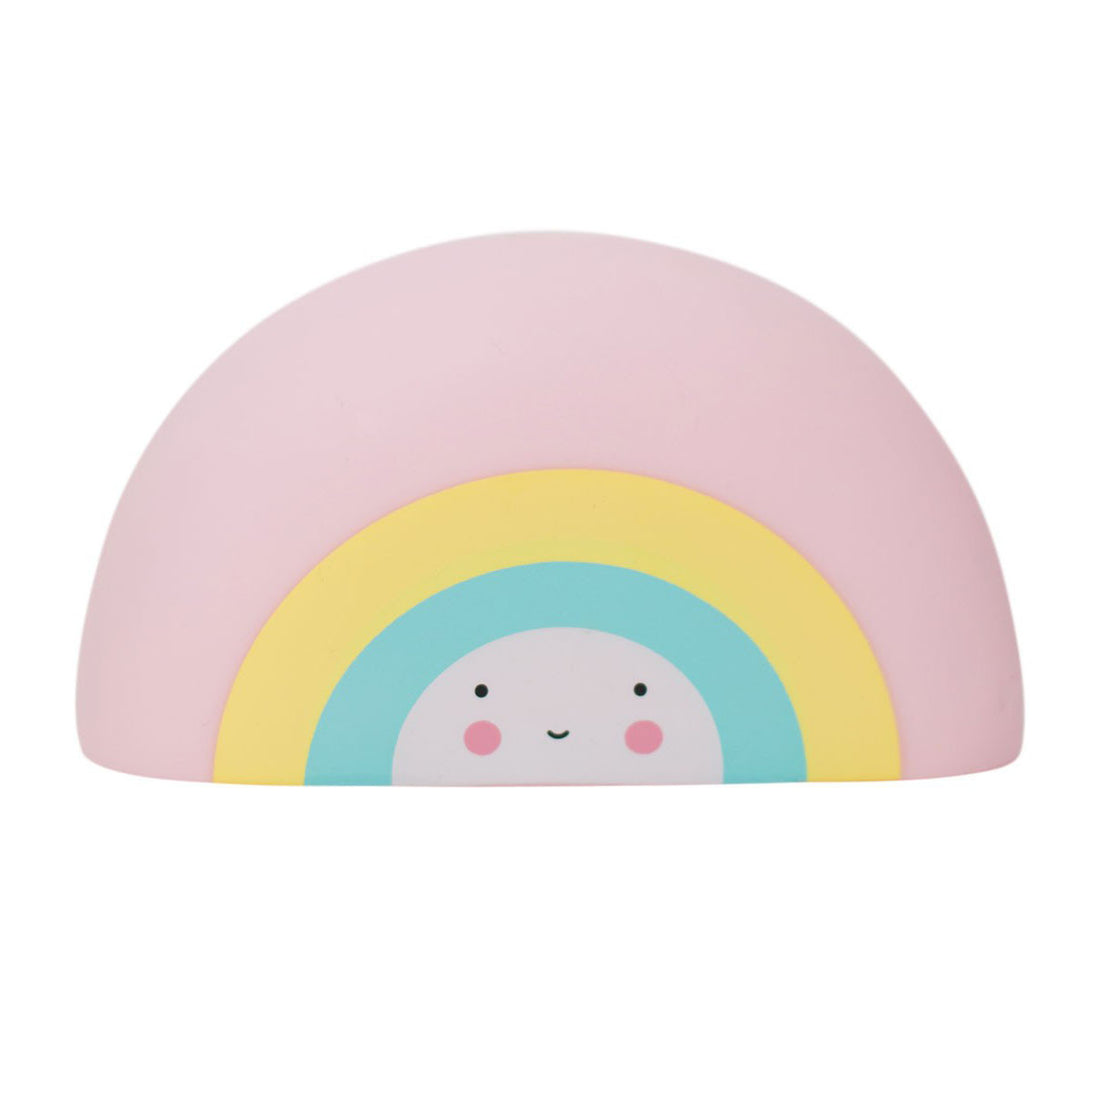 a-little-lovely-company-bath-toy-rainbow- (1)